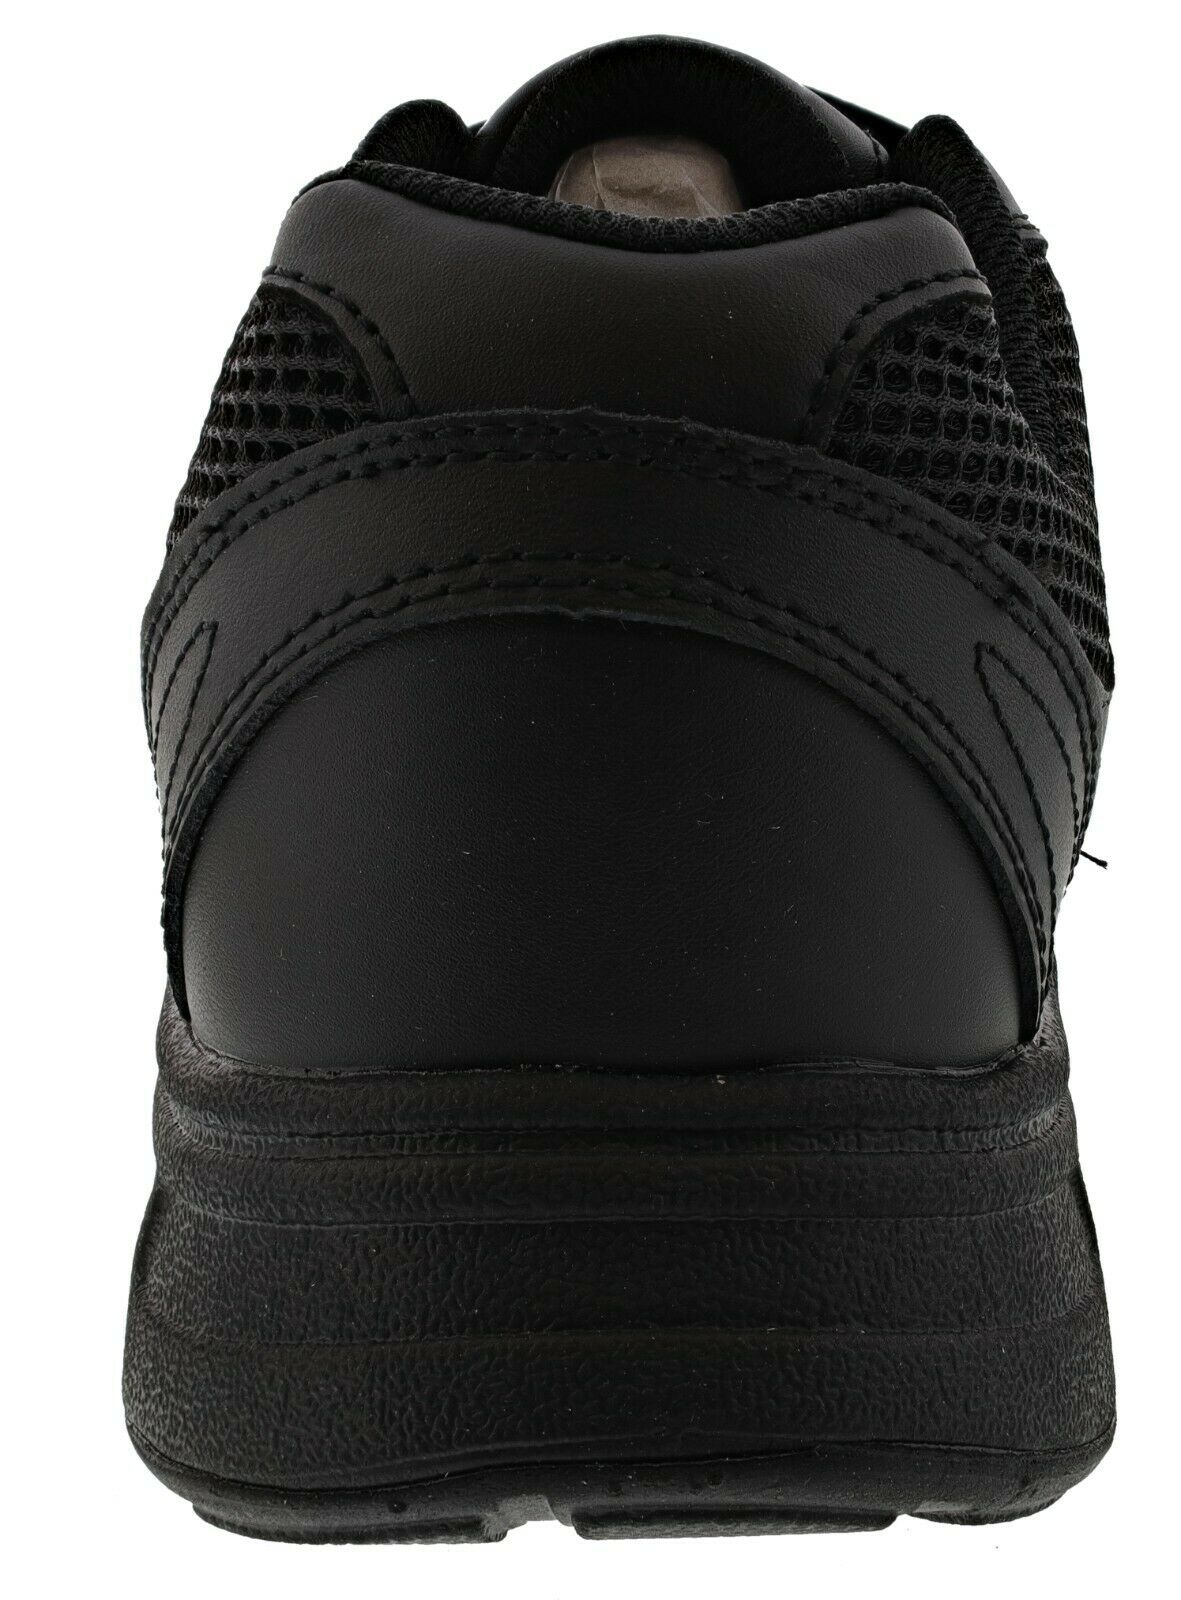 Dr. Scholl's Men's Brisk Sneakers, Wide Width - image 4 of 5